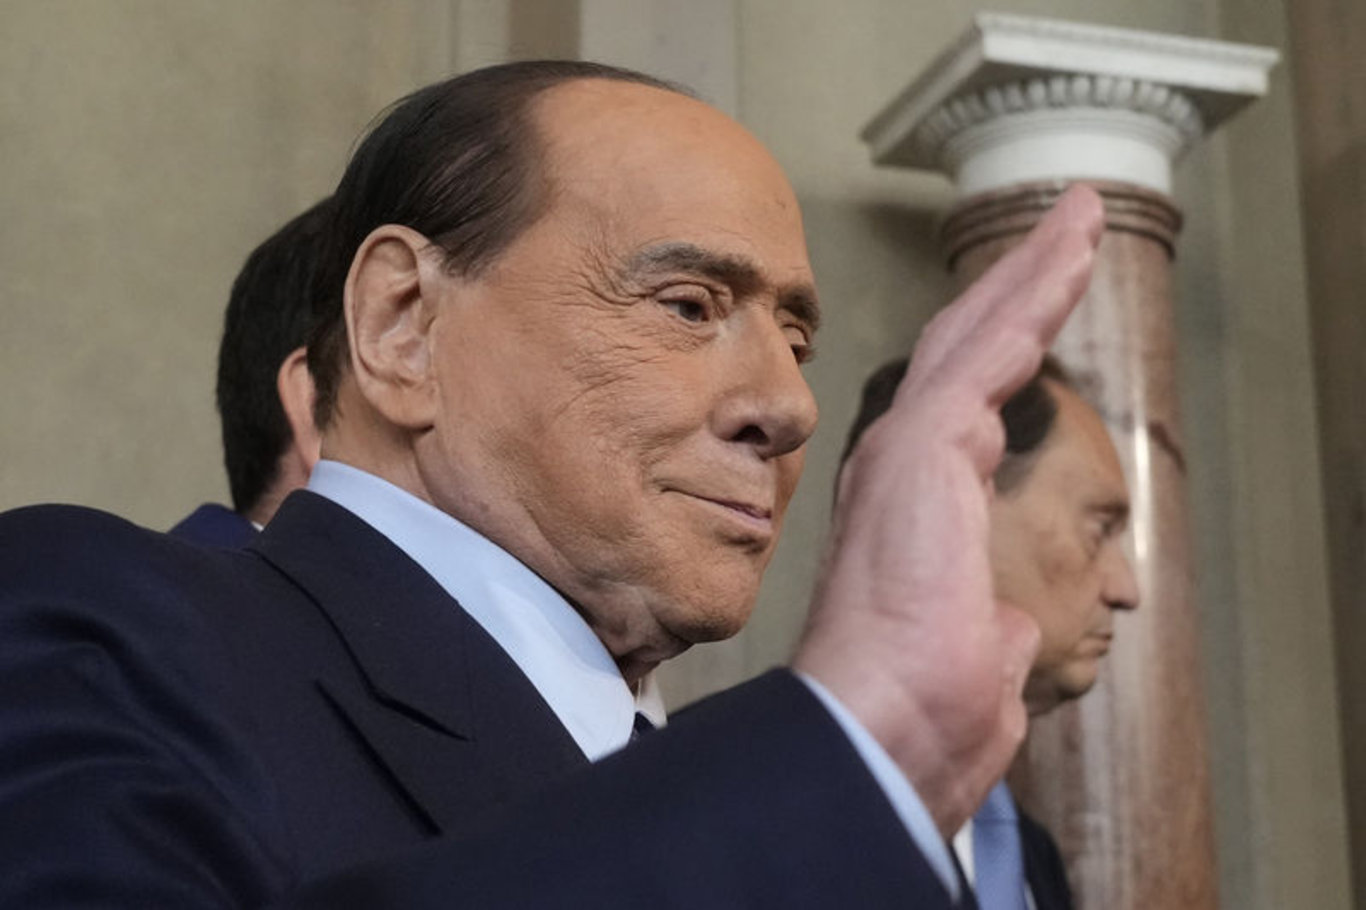 Silvio Berlusconi kimdir ve neden öldü? Eski İtalya Başbakanı Silvio Berlusconi hastalığı neydi, ölüm sebebi nedir ve kaç yaşındaydı?